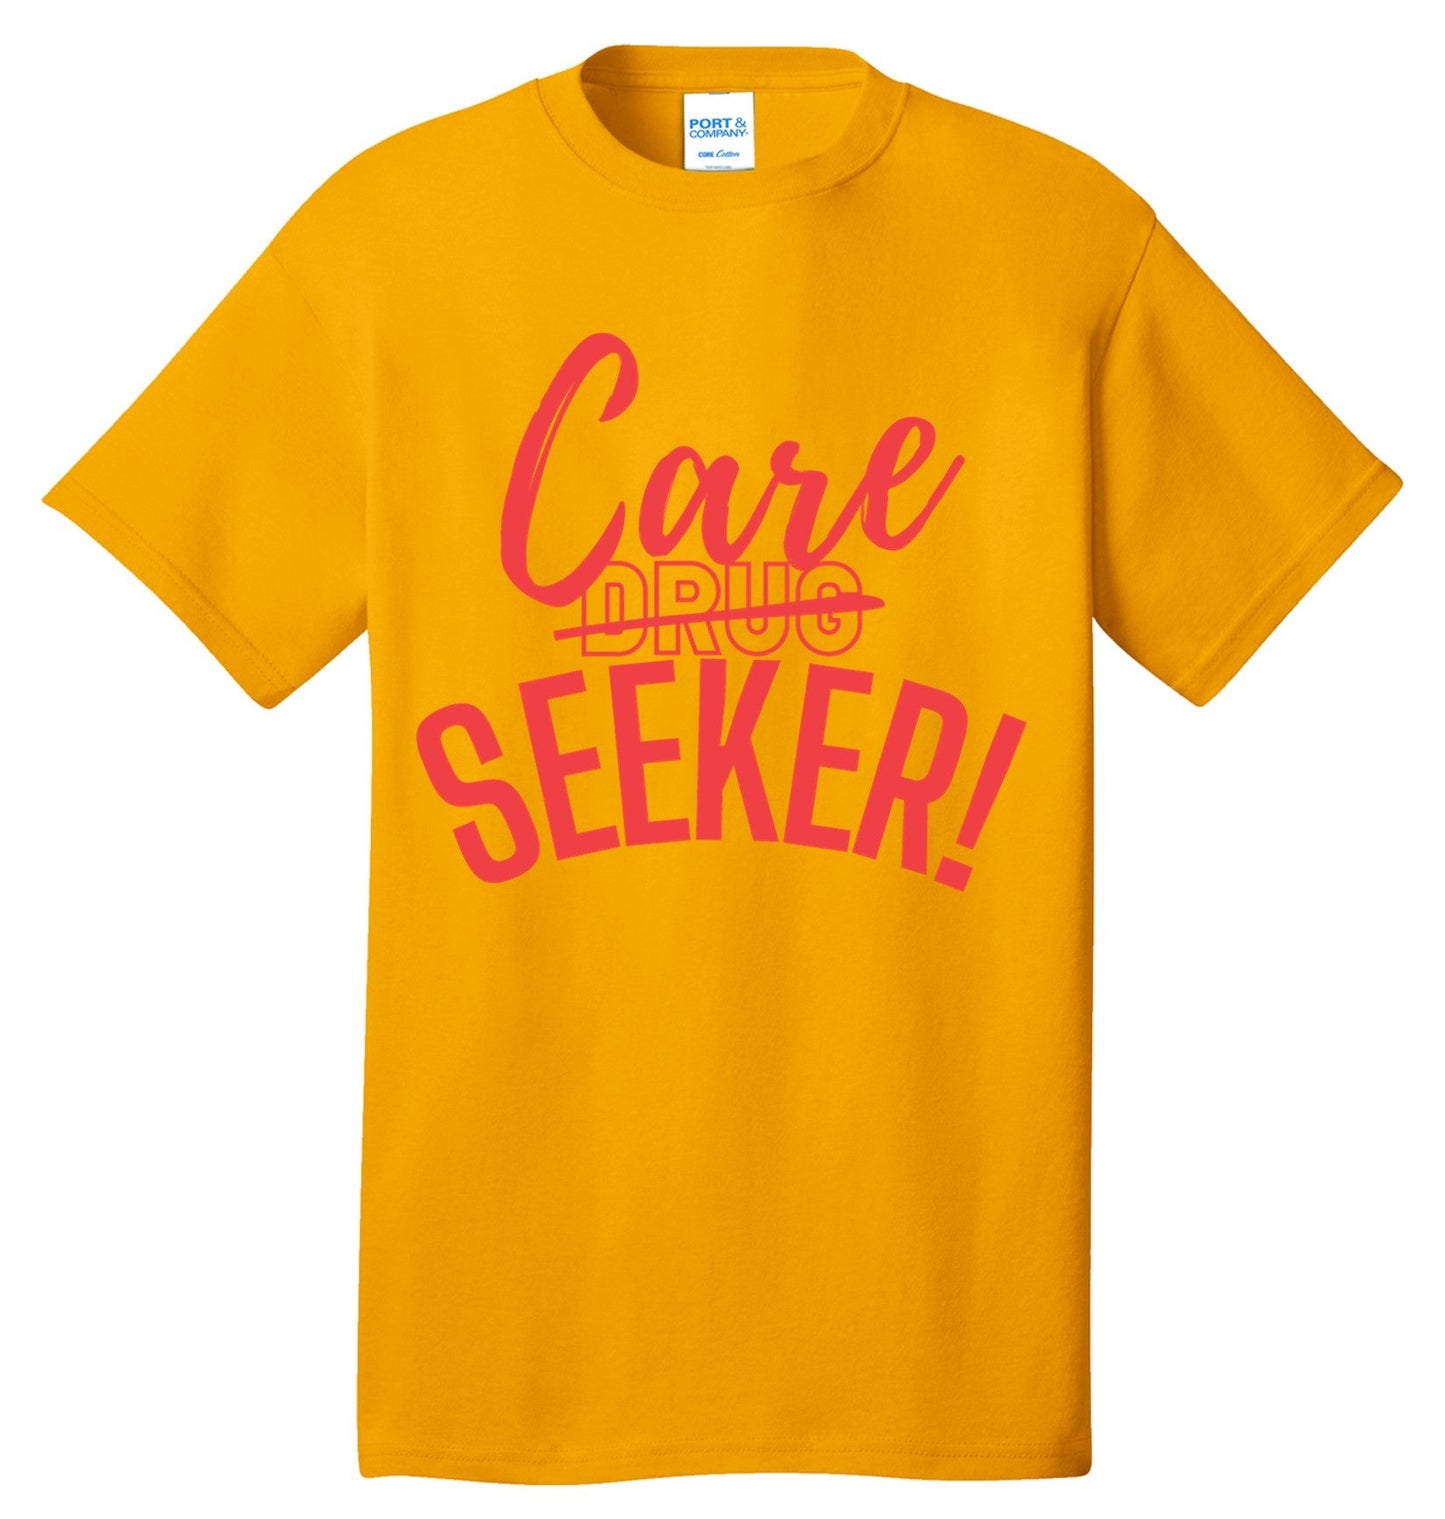 CARE Seeker NOT Drug Seeker (Youth)